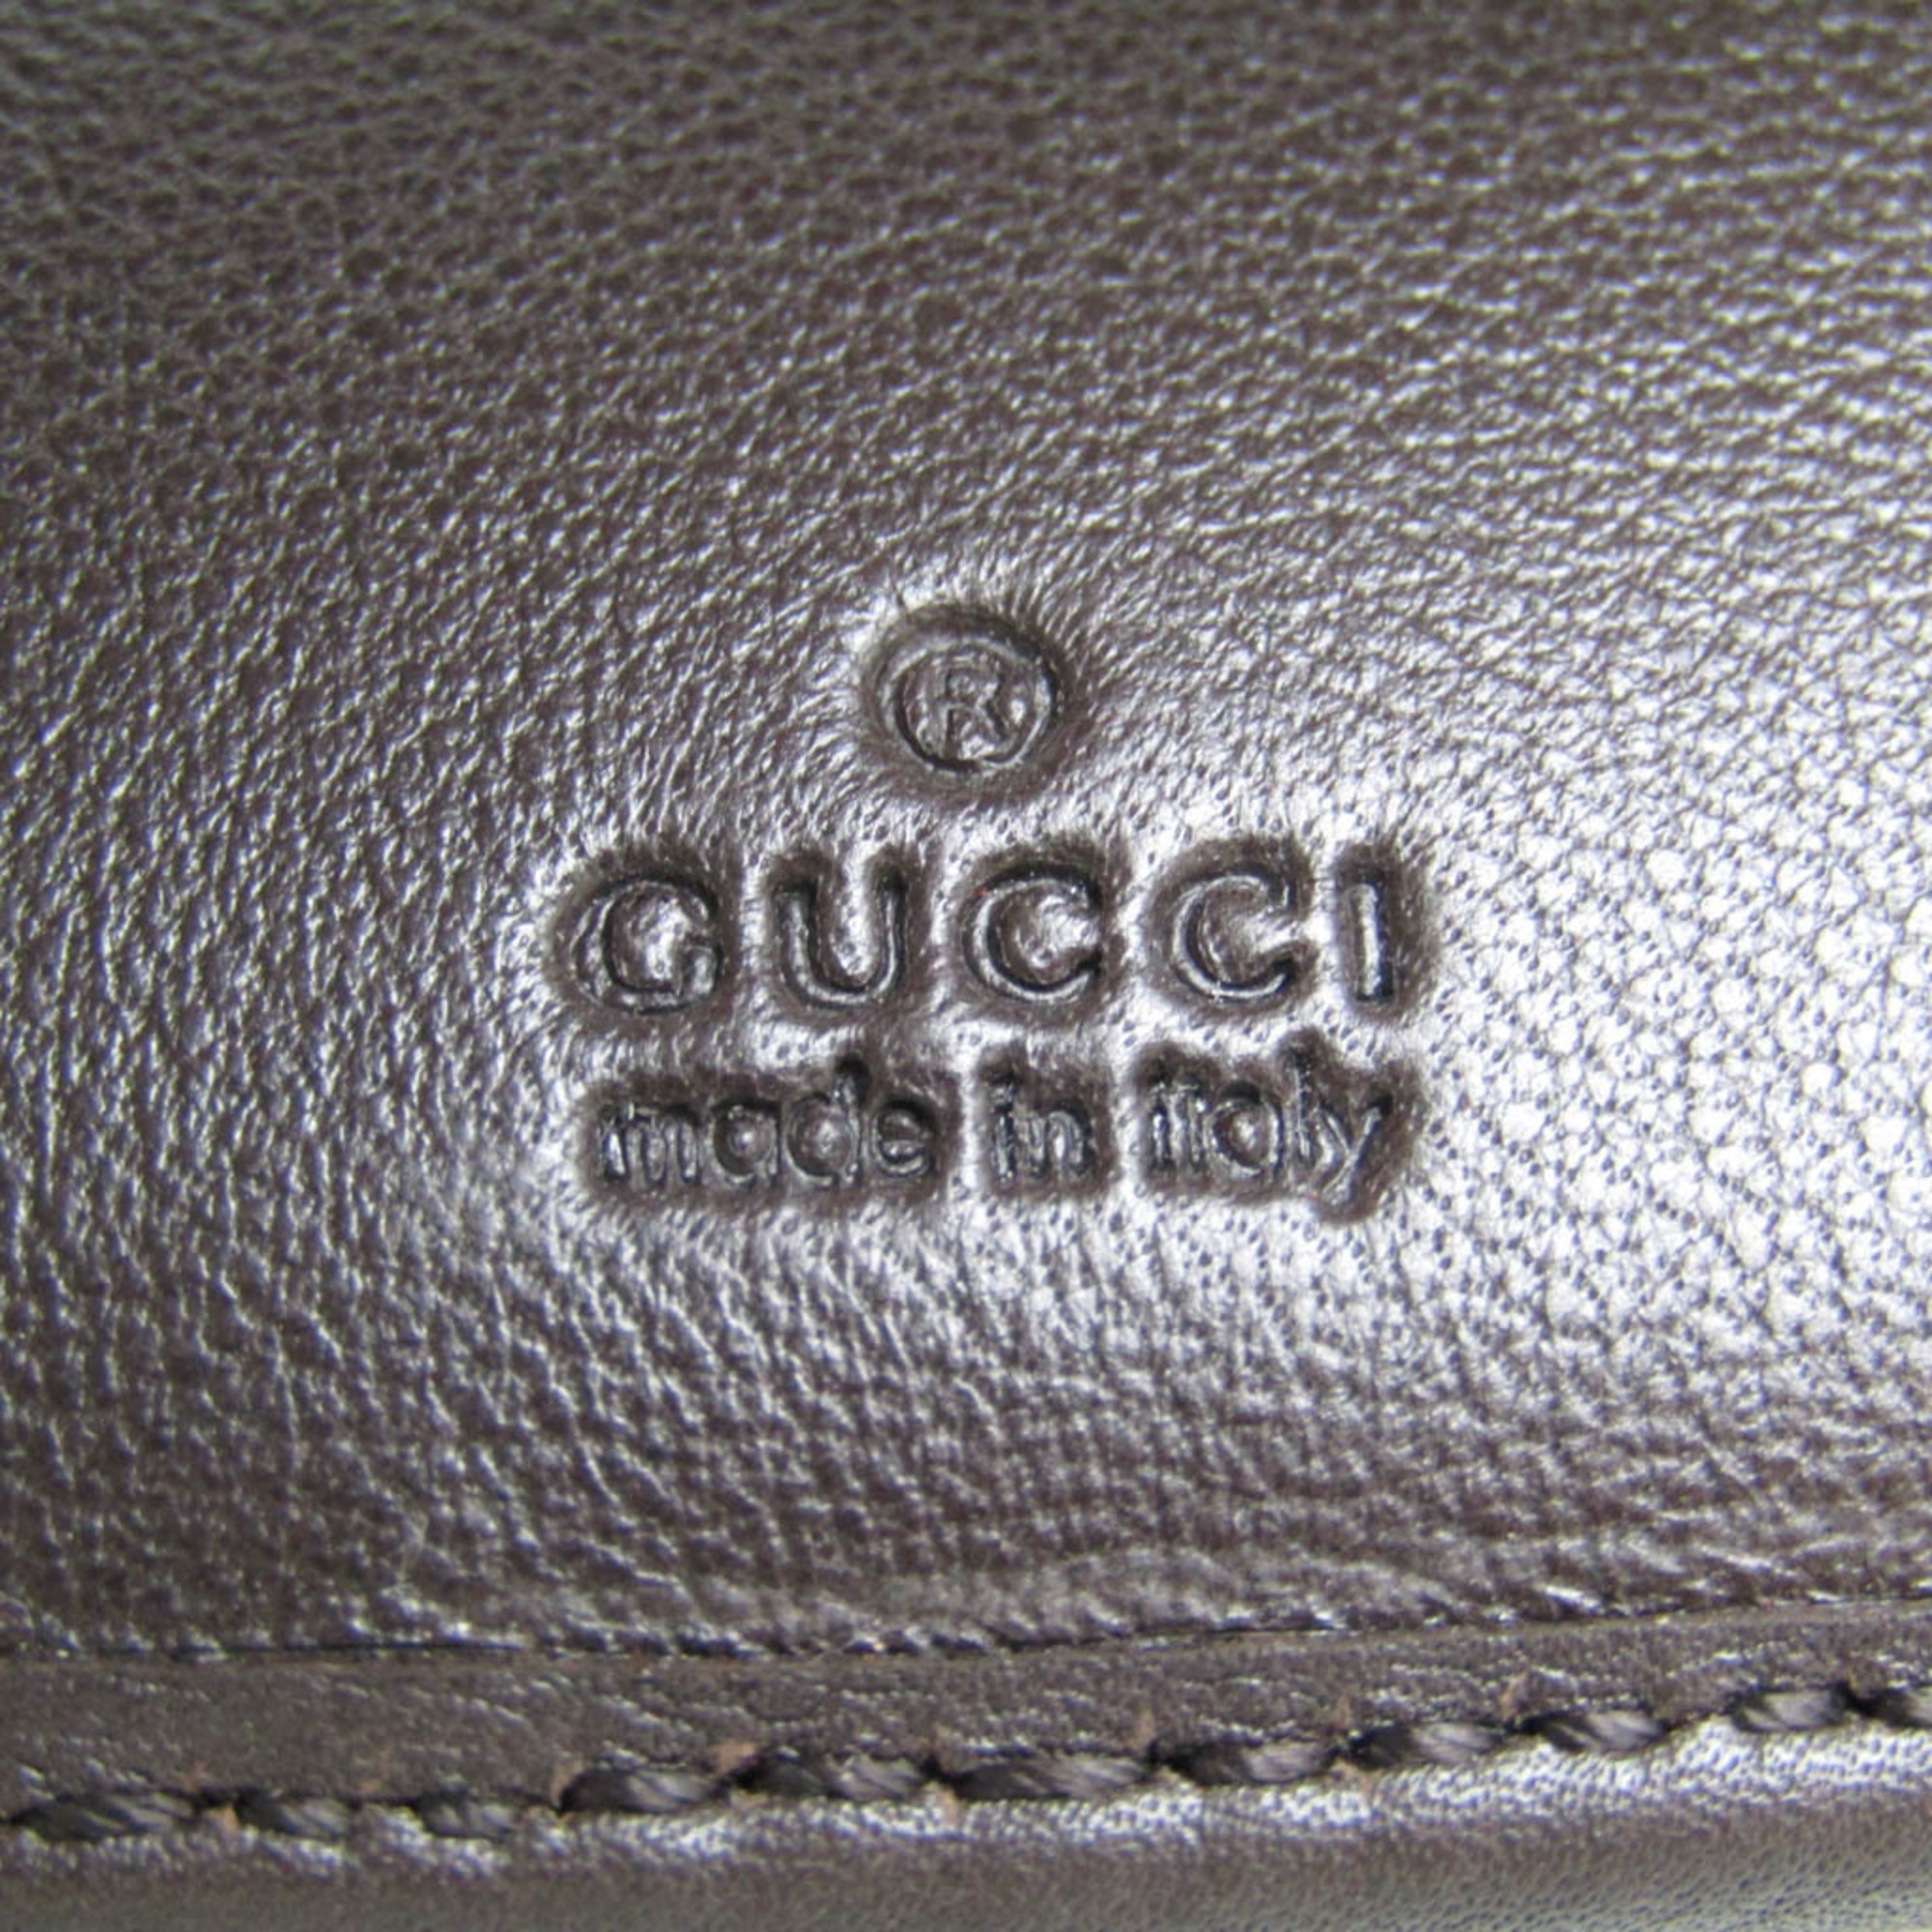 グッチ(Gucci) 三つ折りコンパクト財布 268831 レディース,メンズ レザー GGキャンバス キーケース ベージュ,ダークブラウン